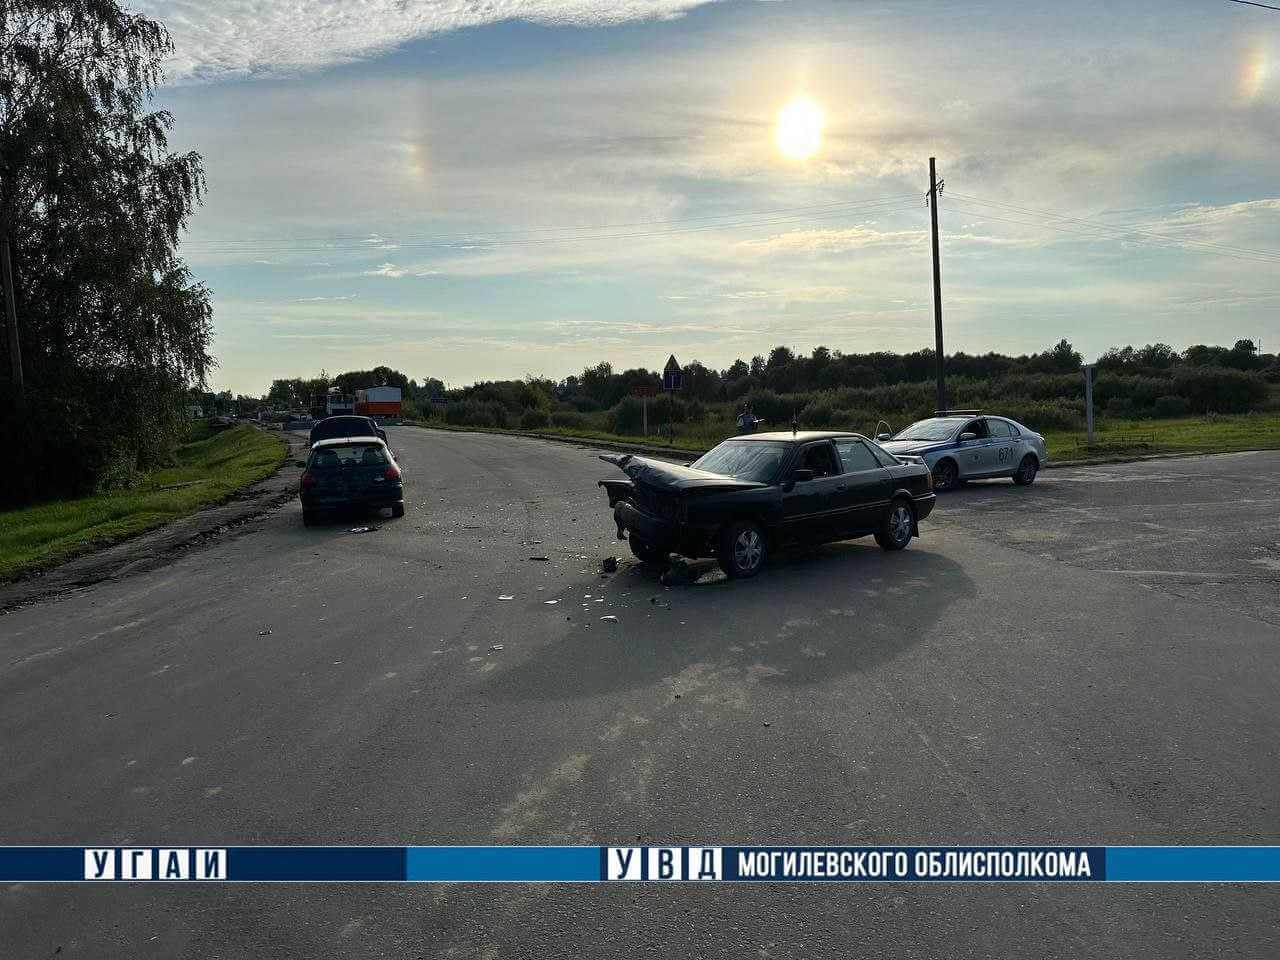 В Хотимске 15-летния пассажирка травмирована в ДТП